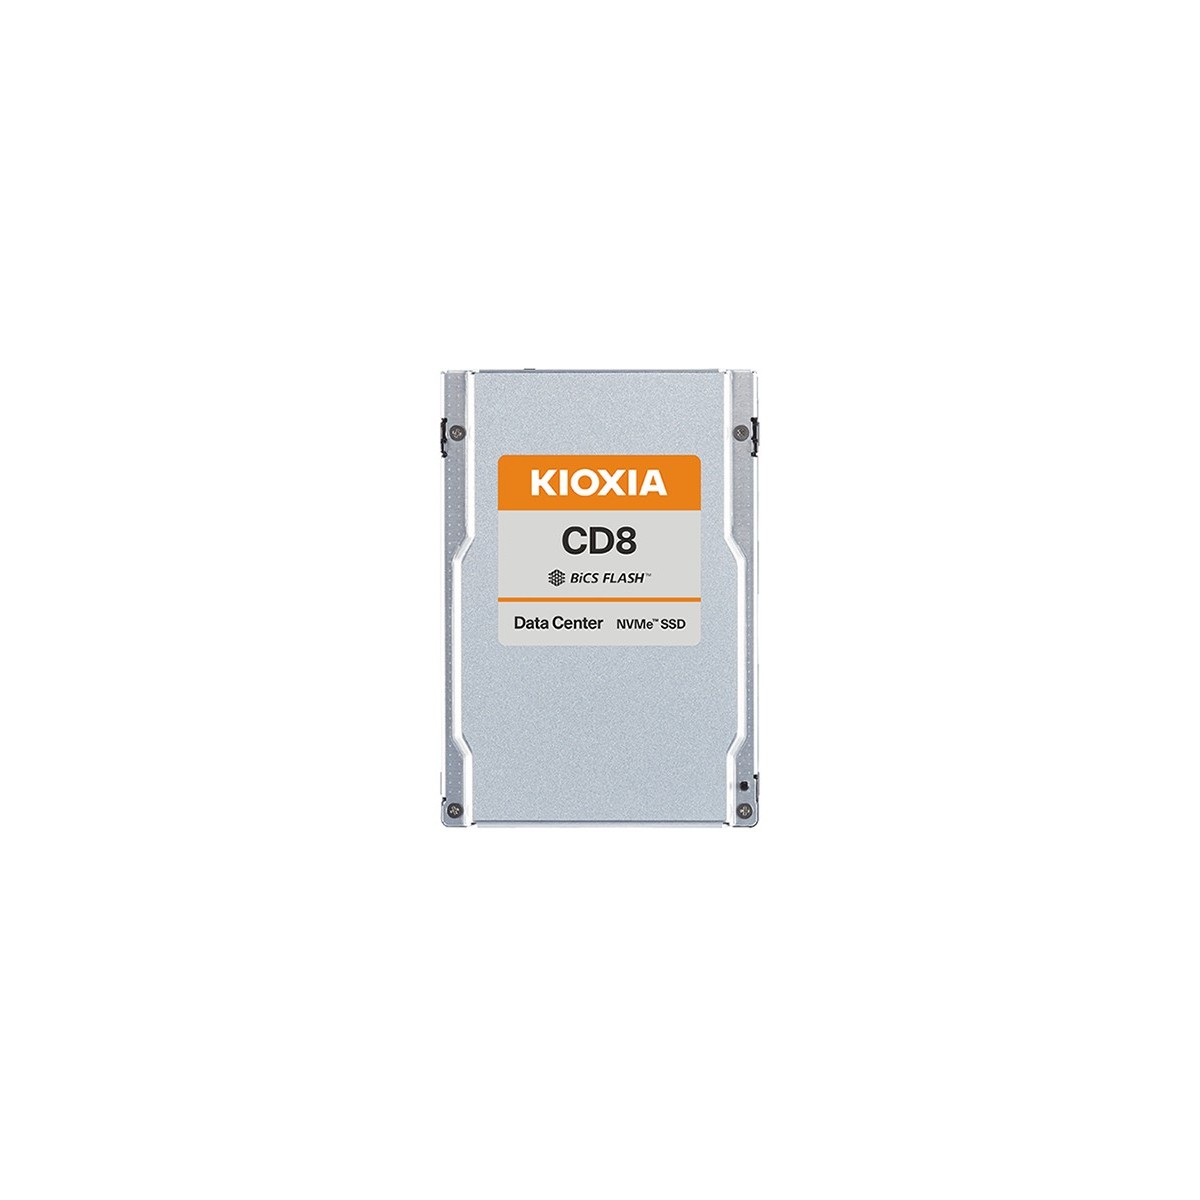 SSD 2.5 15.36TB  KIOXIA CD8-R (PCIe 4.0-NVMe) Enterprise SSD für Server